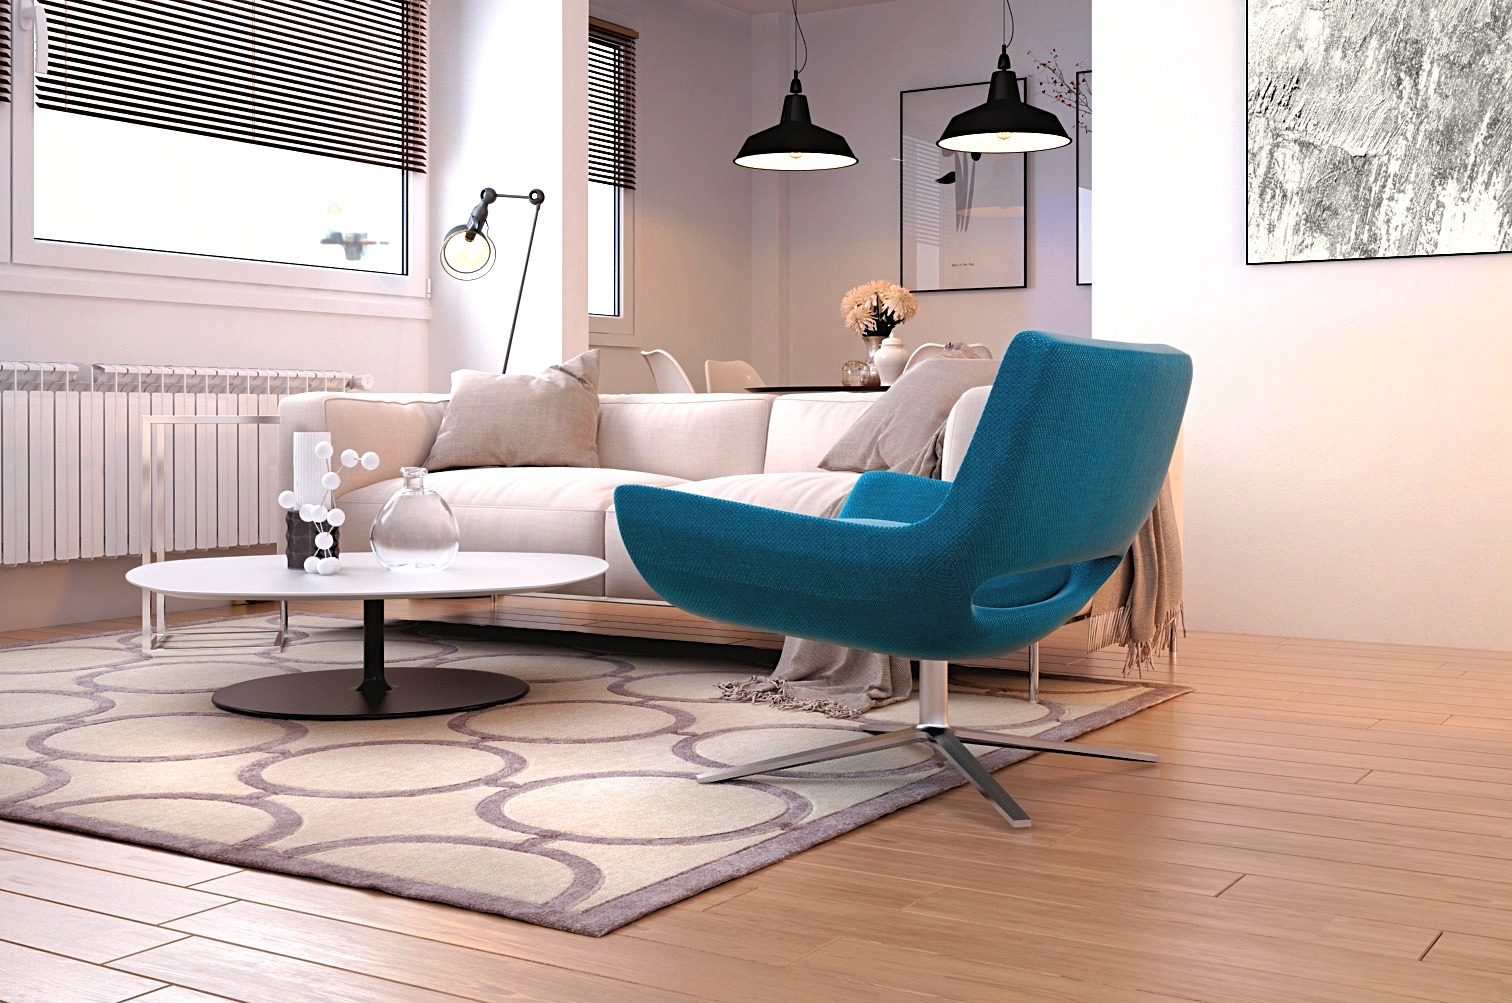 dans un appartement moderne on apperçoit un capae beigne tres confortable, un fauteuil bleu turquoise, une table de salon balcnhe avec un pied noir et un tais beige et gris